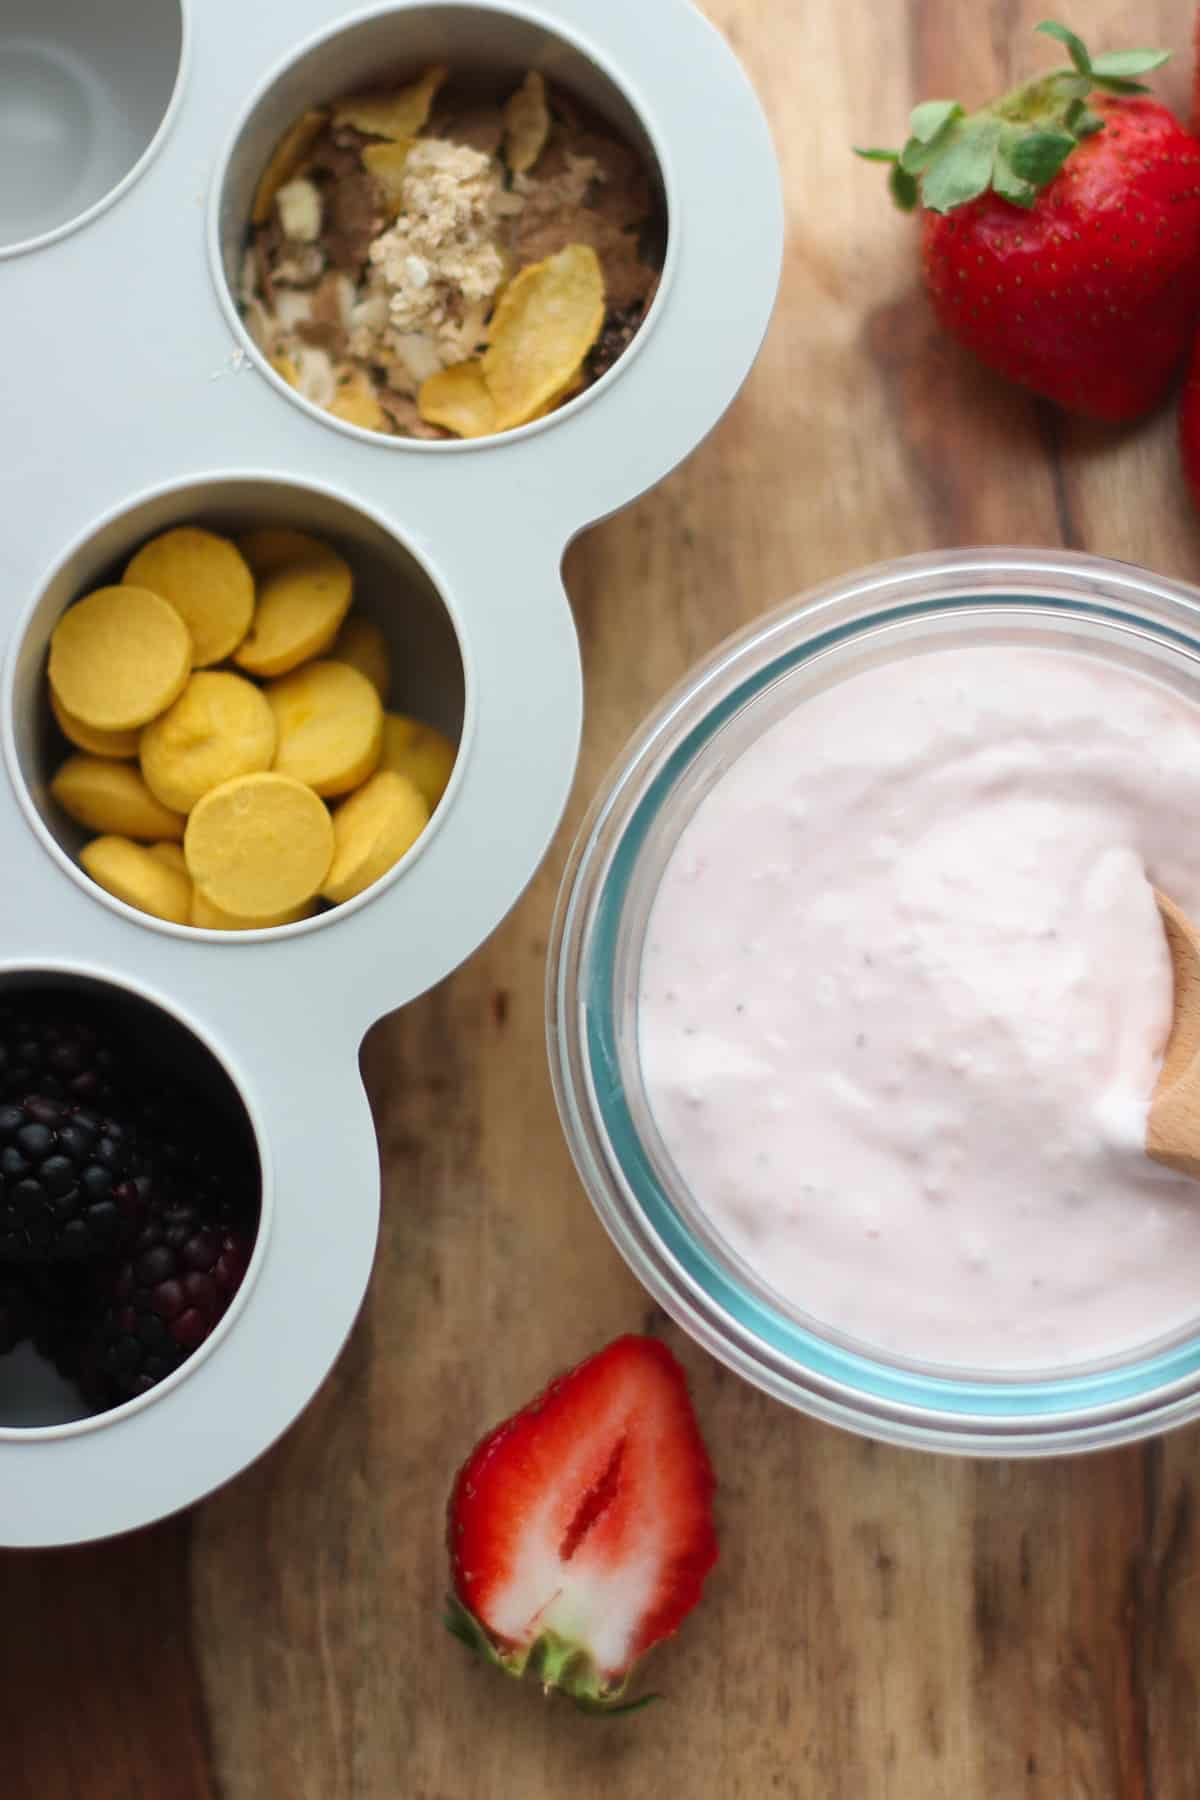 Yogurt melts, granola, and blackberries in muffin pan next to yogurt.